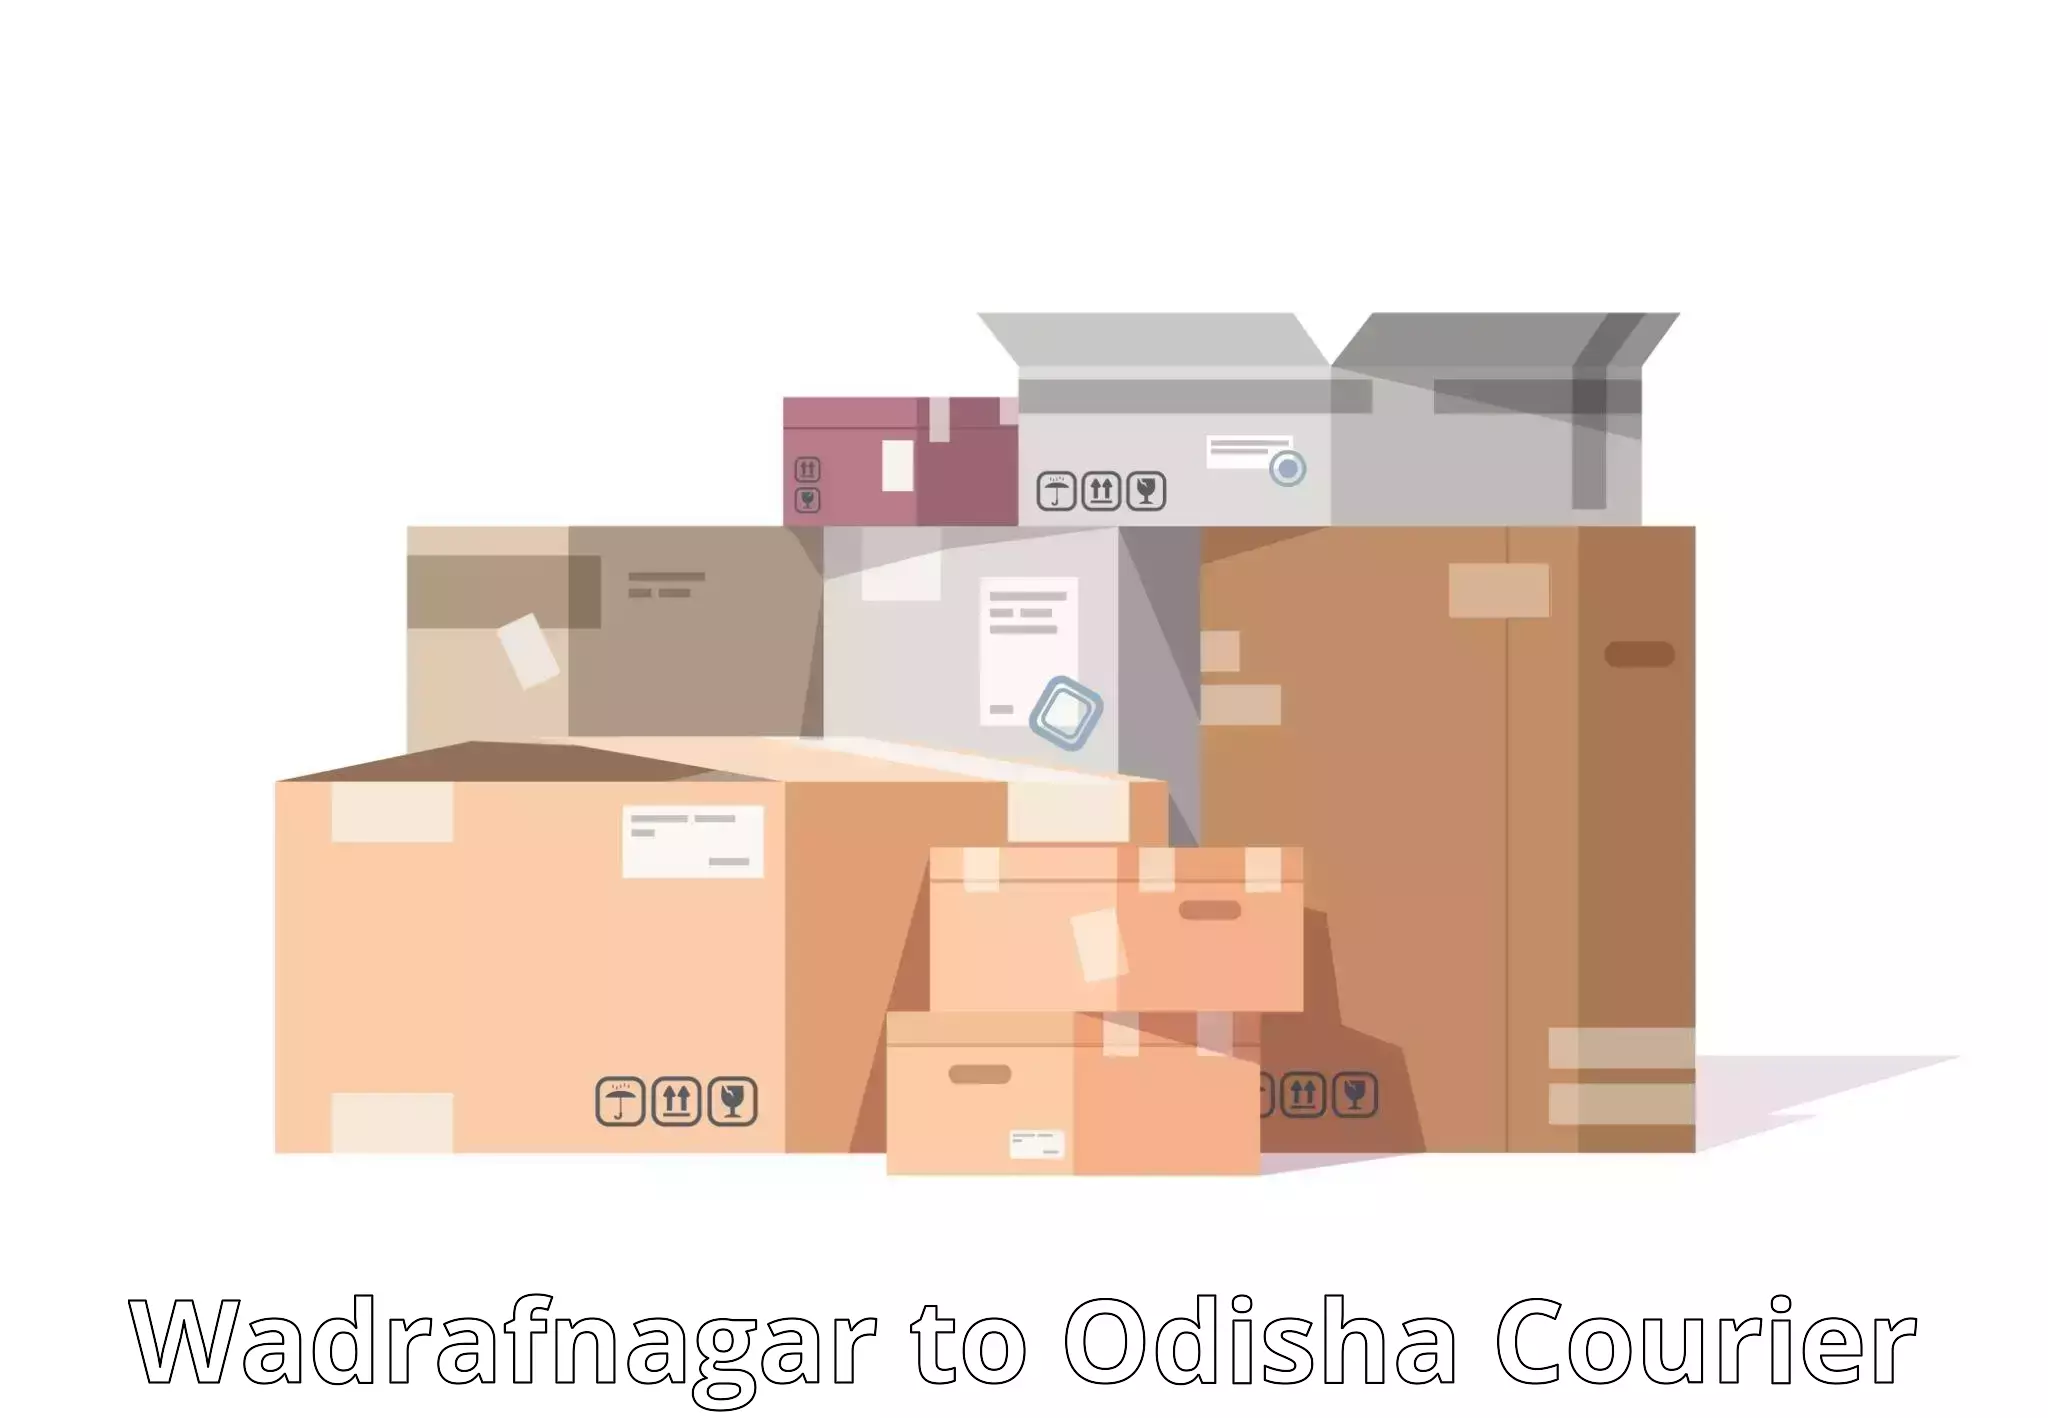 Global courier networks Wadrafnagar to Bonth